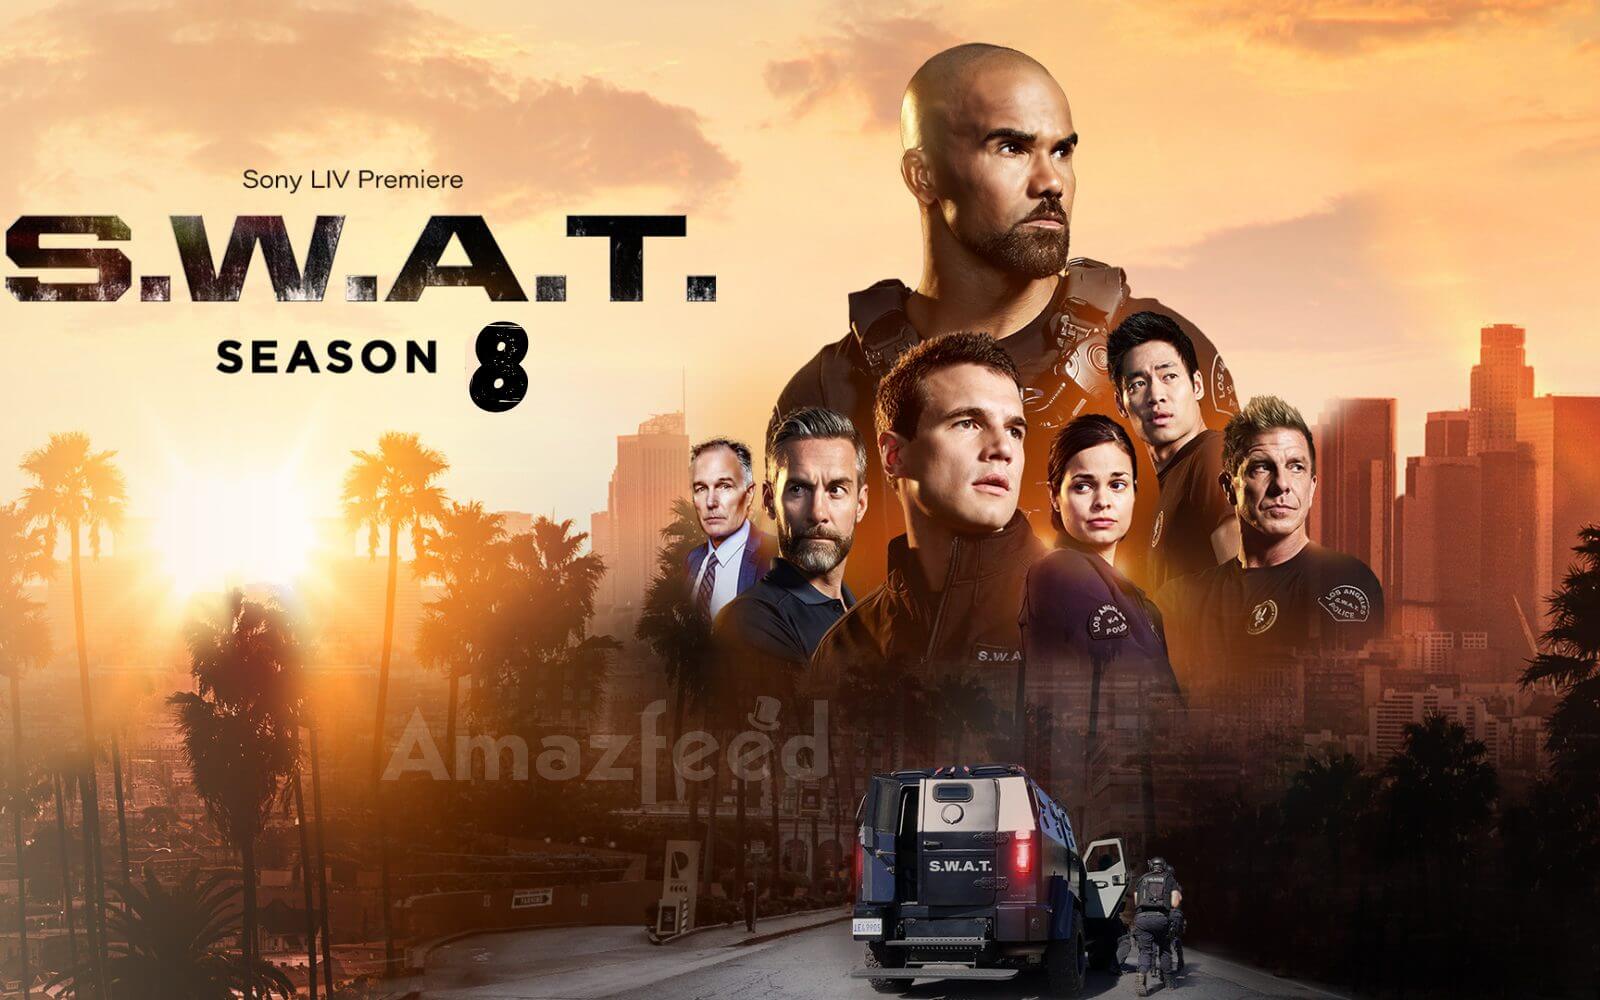 S.W.A.T Season 8 release date